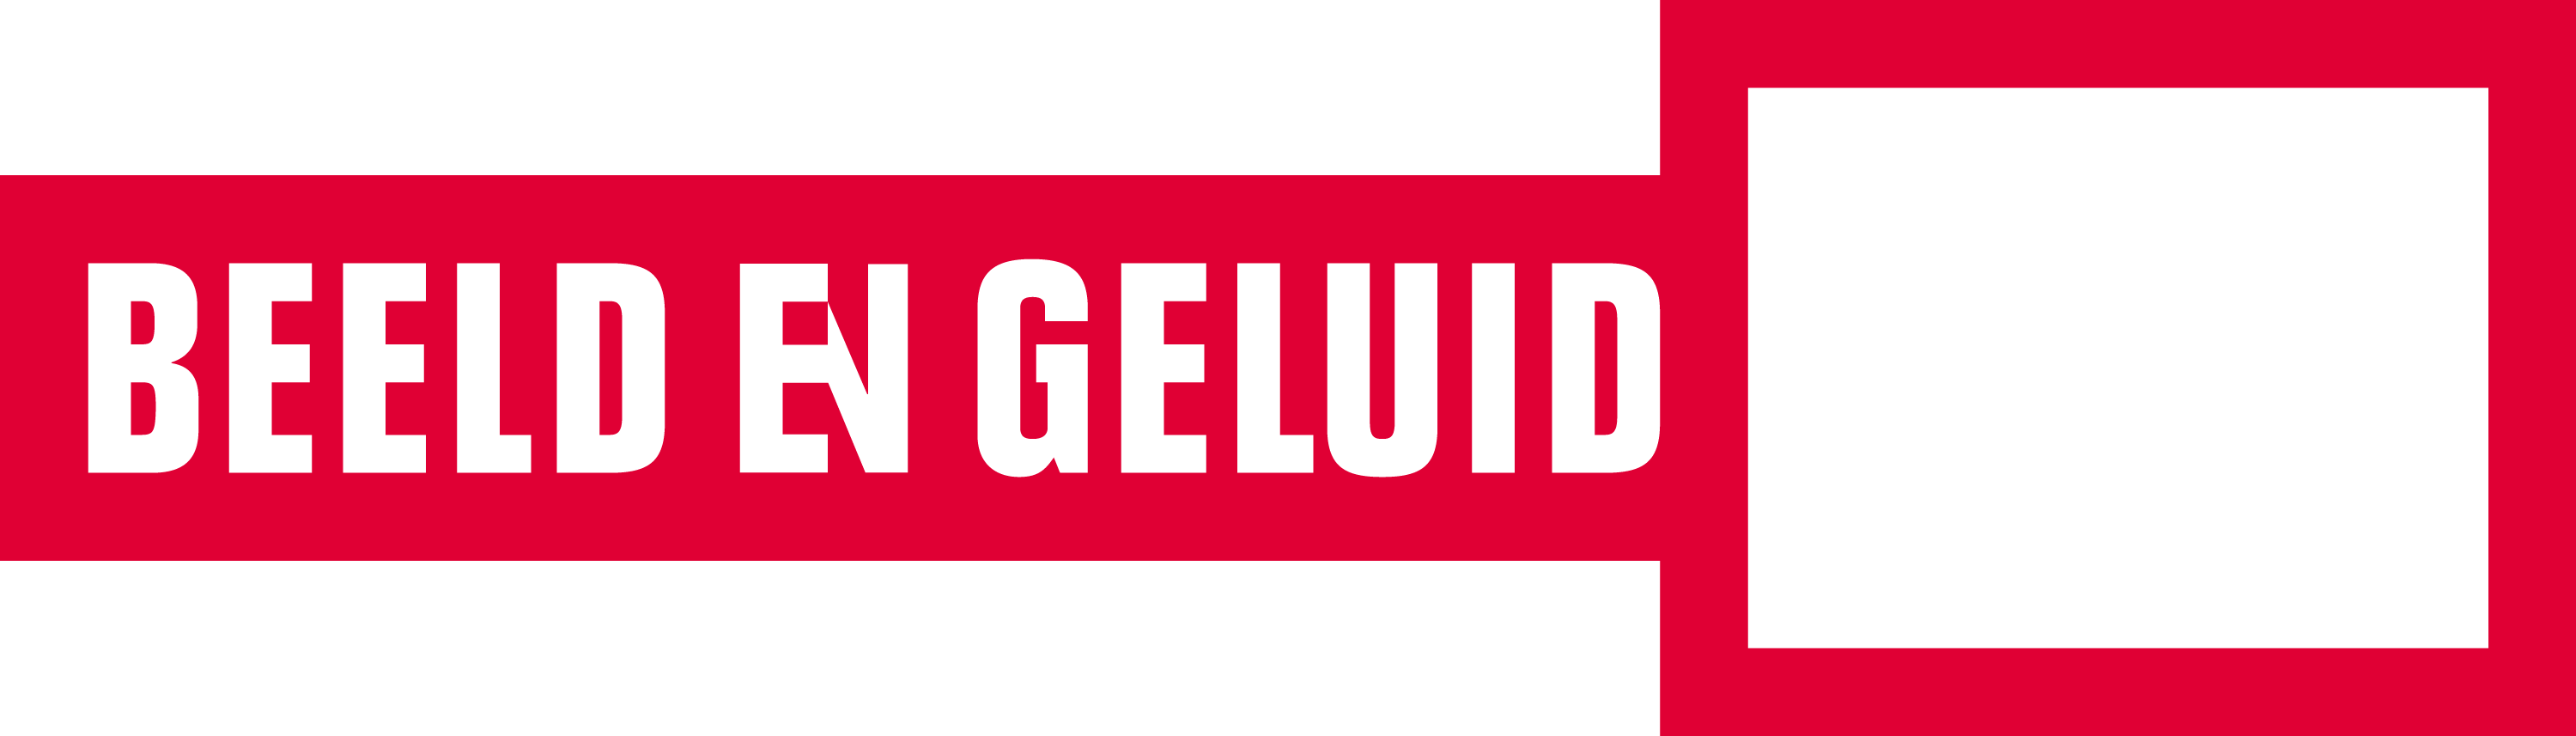 Beeld Geluid NL